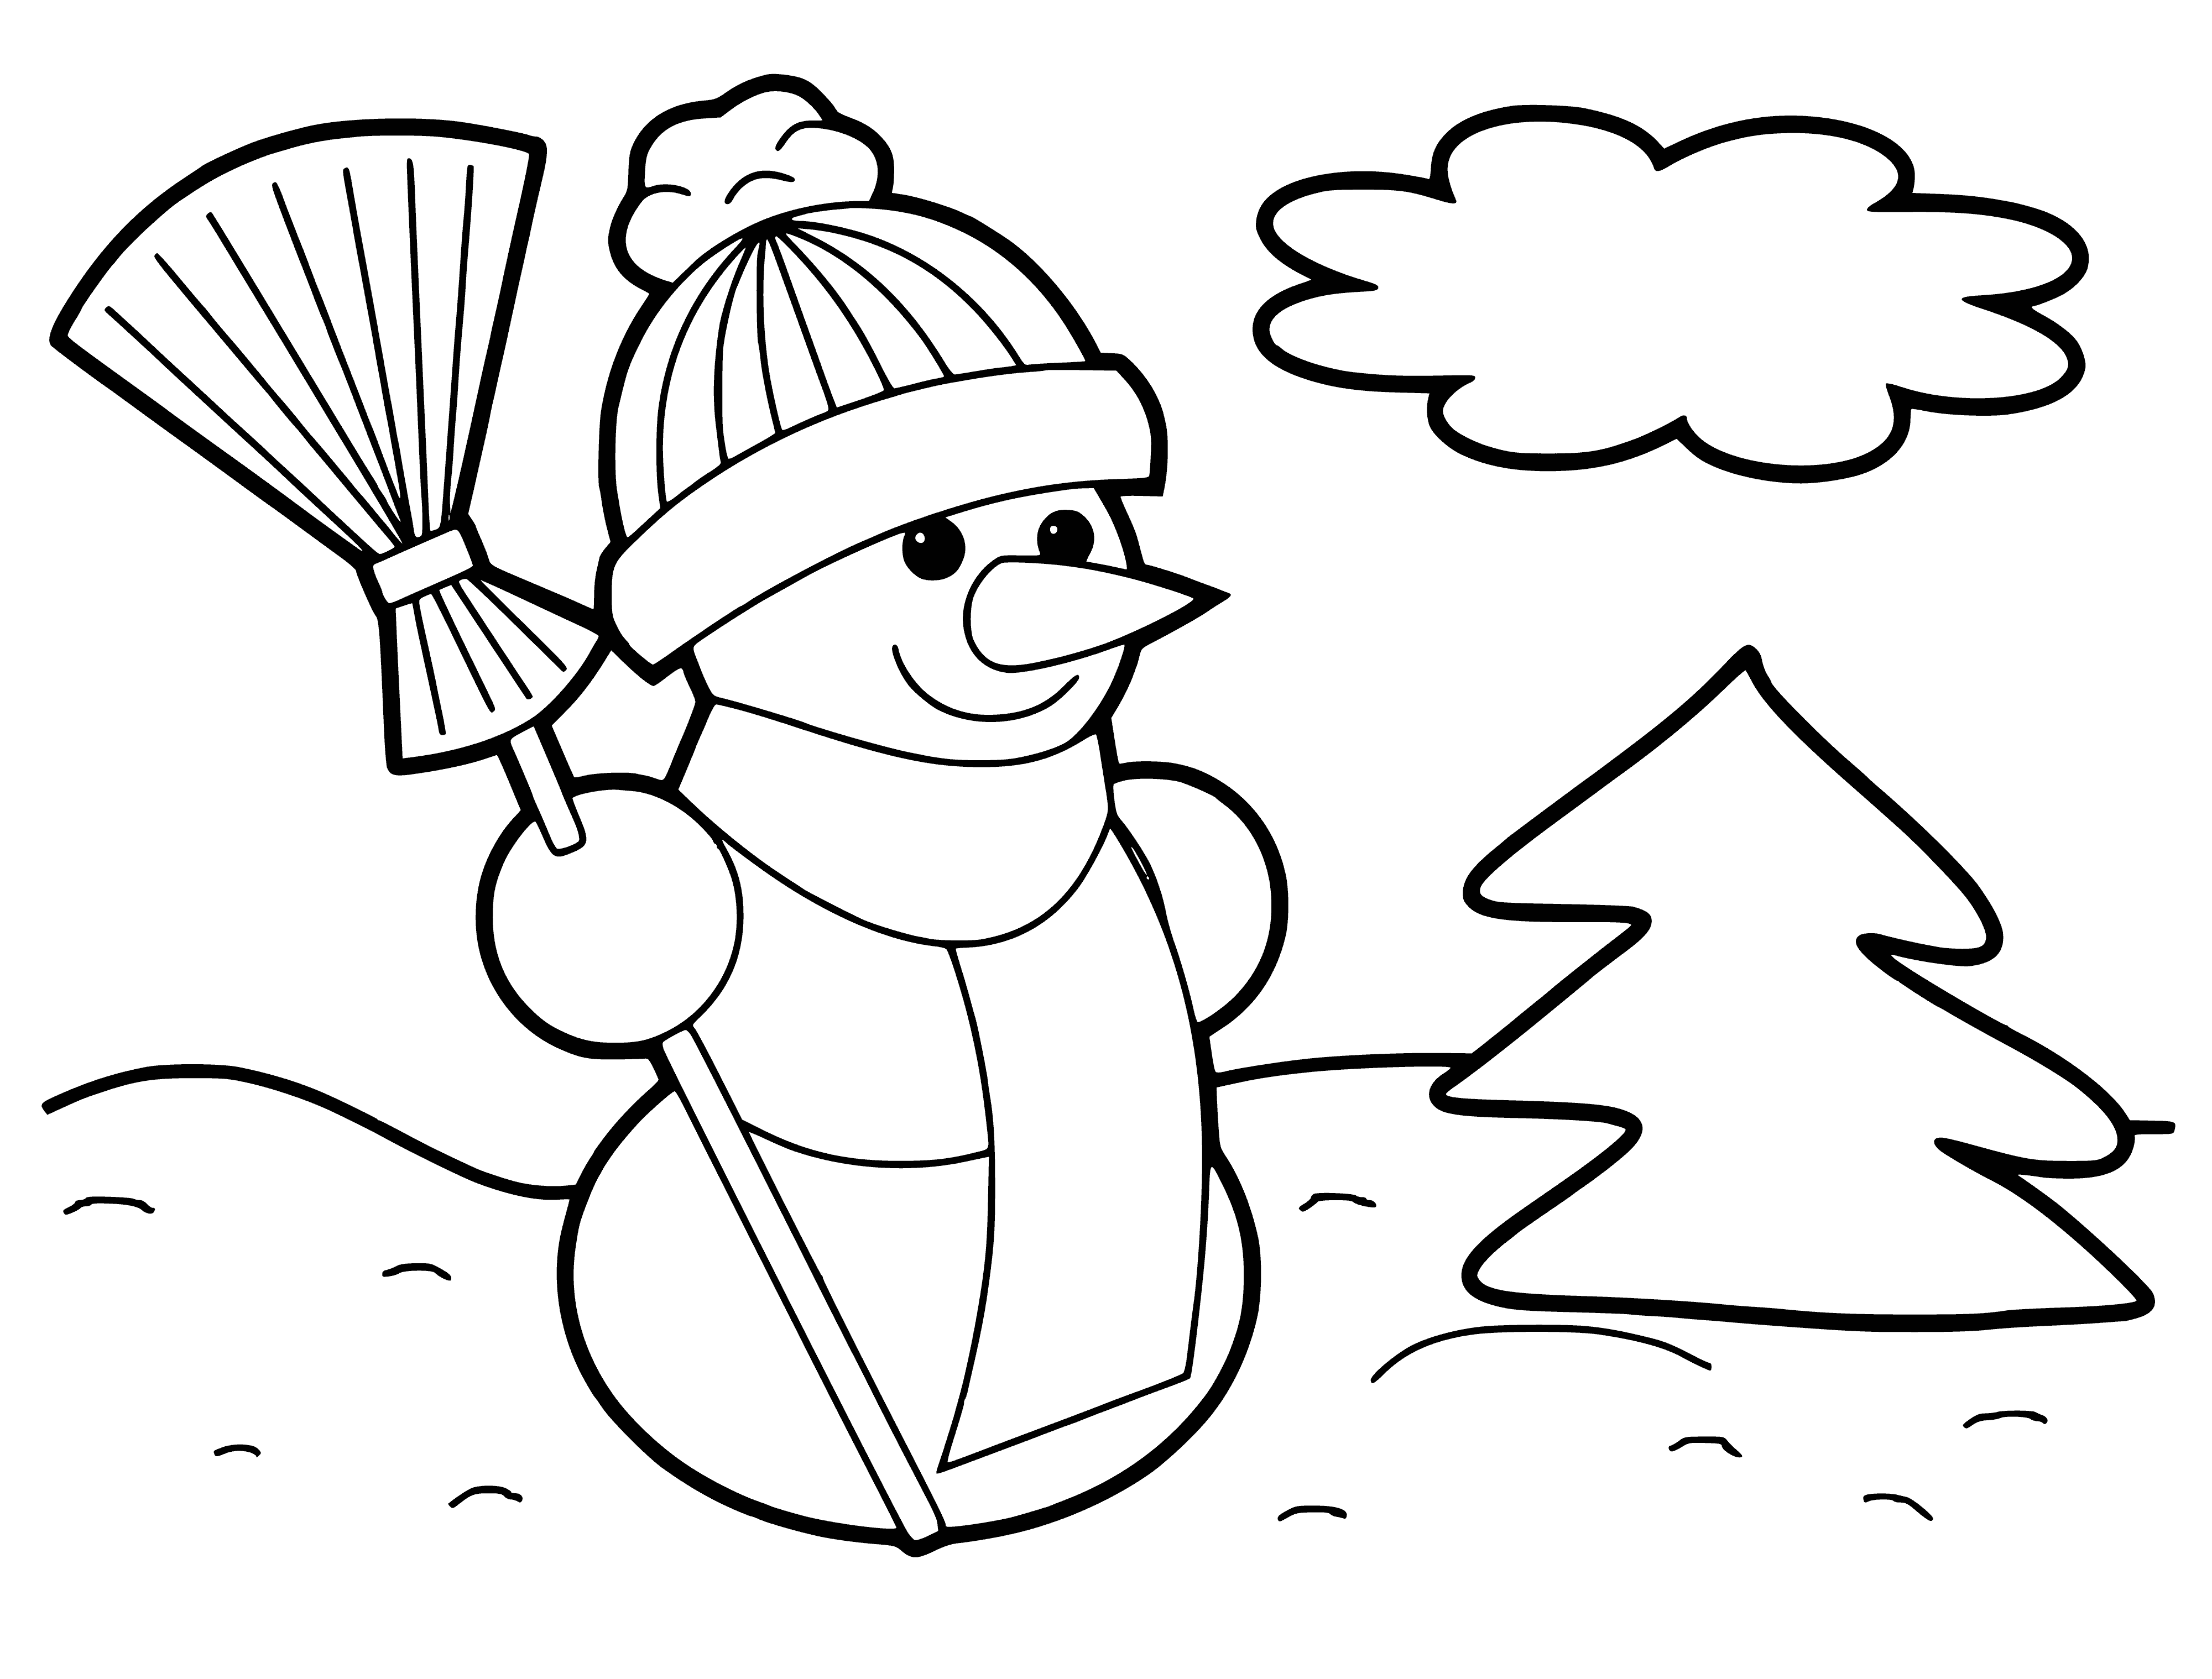 Bonhomme de neige avec un balai près du sapin de Noël coloriage